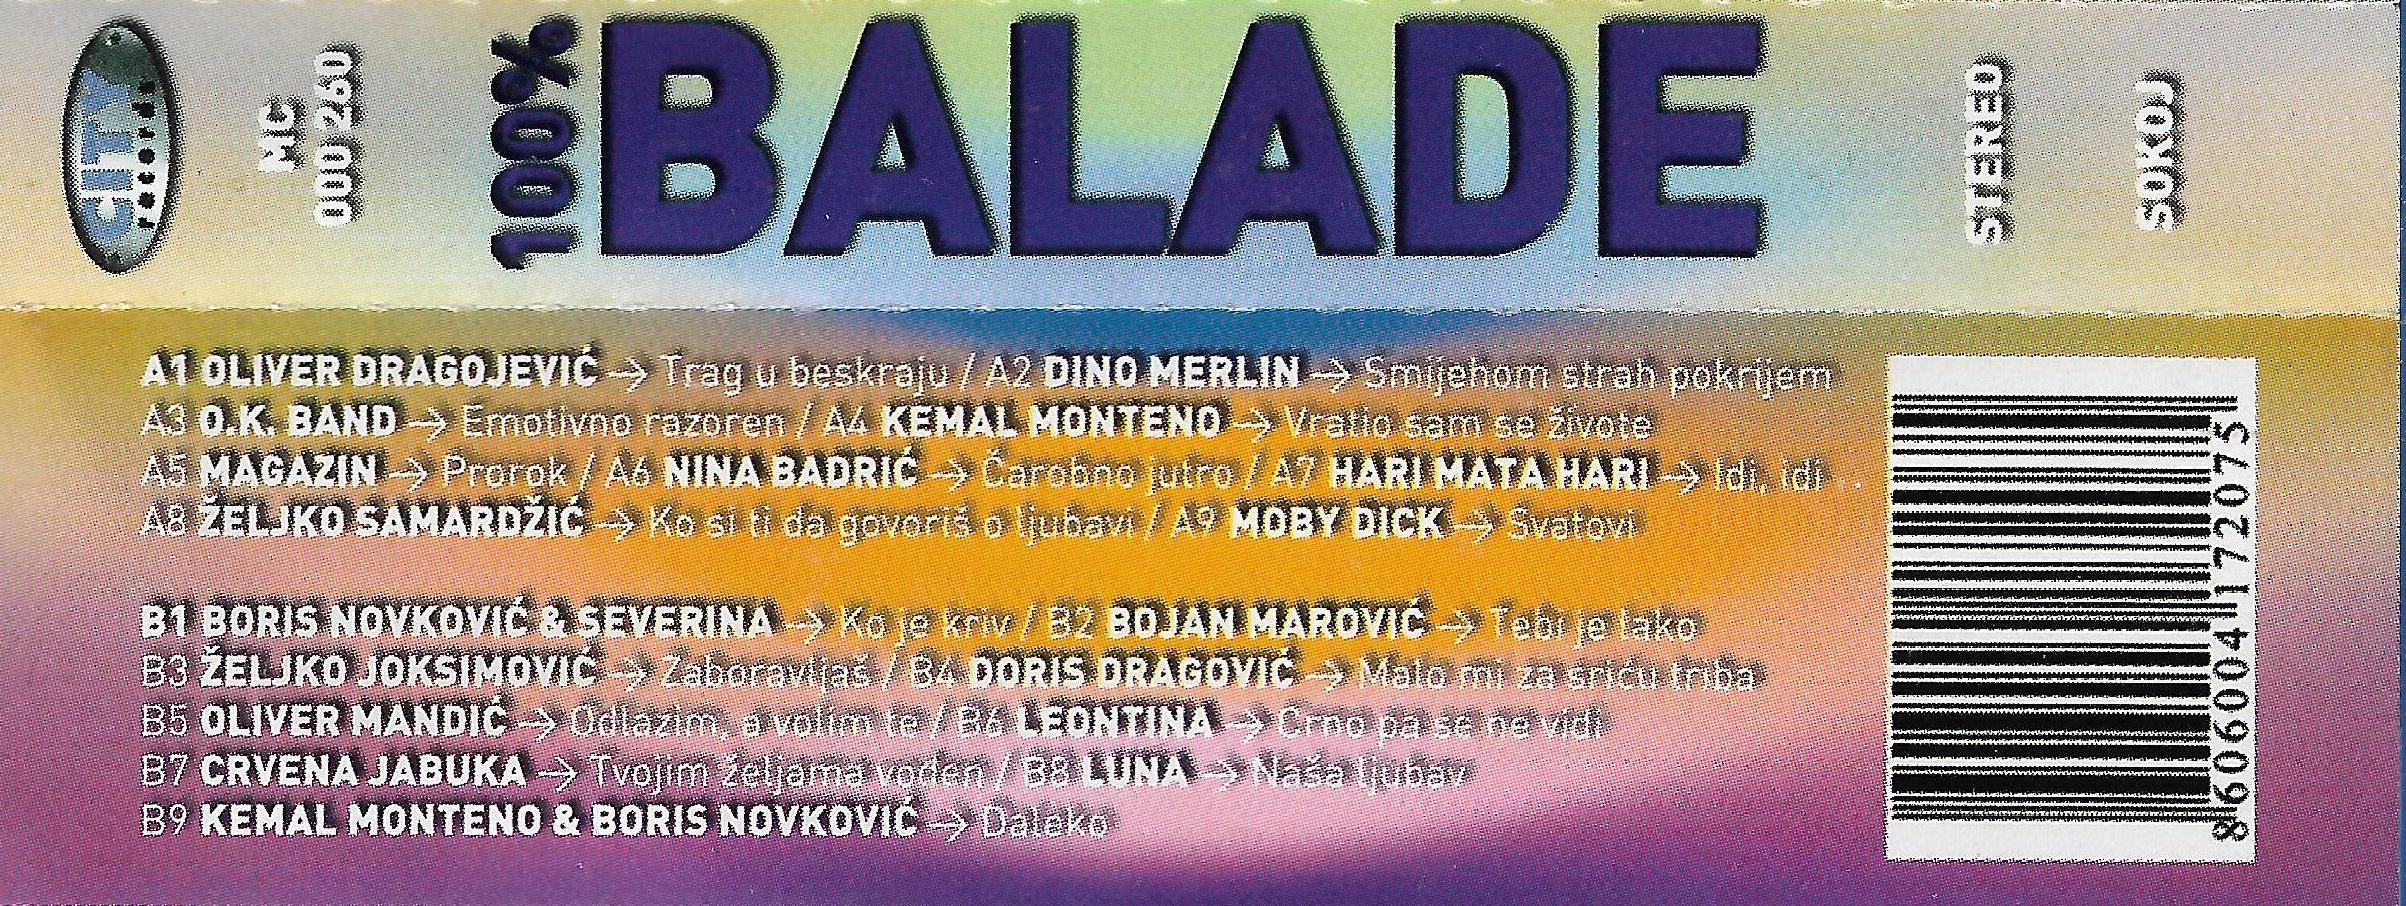 100 Balade 2003 1 b